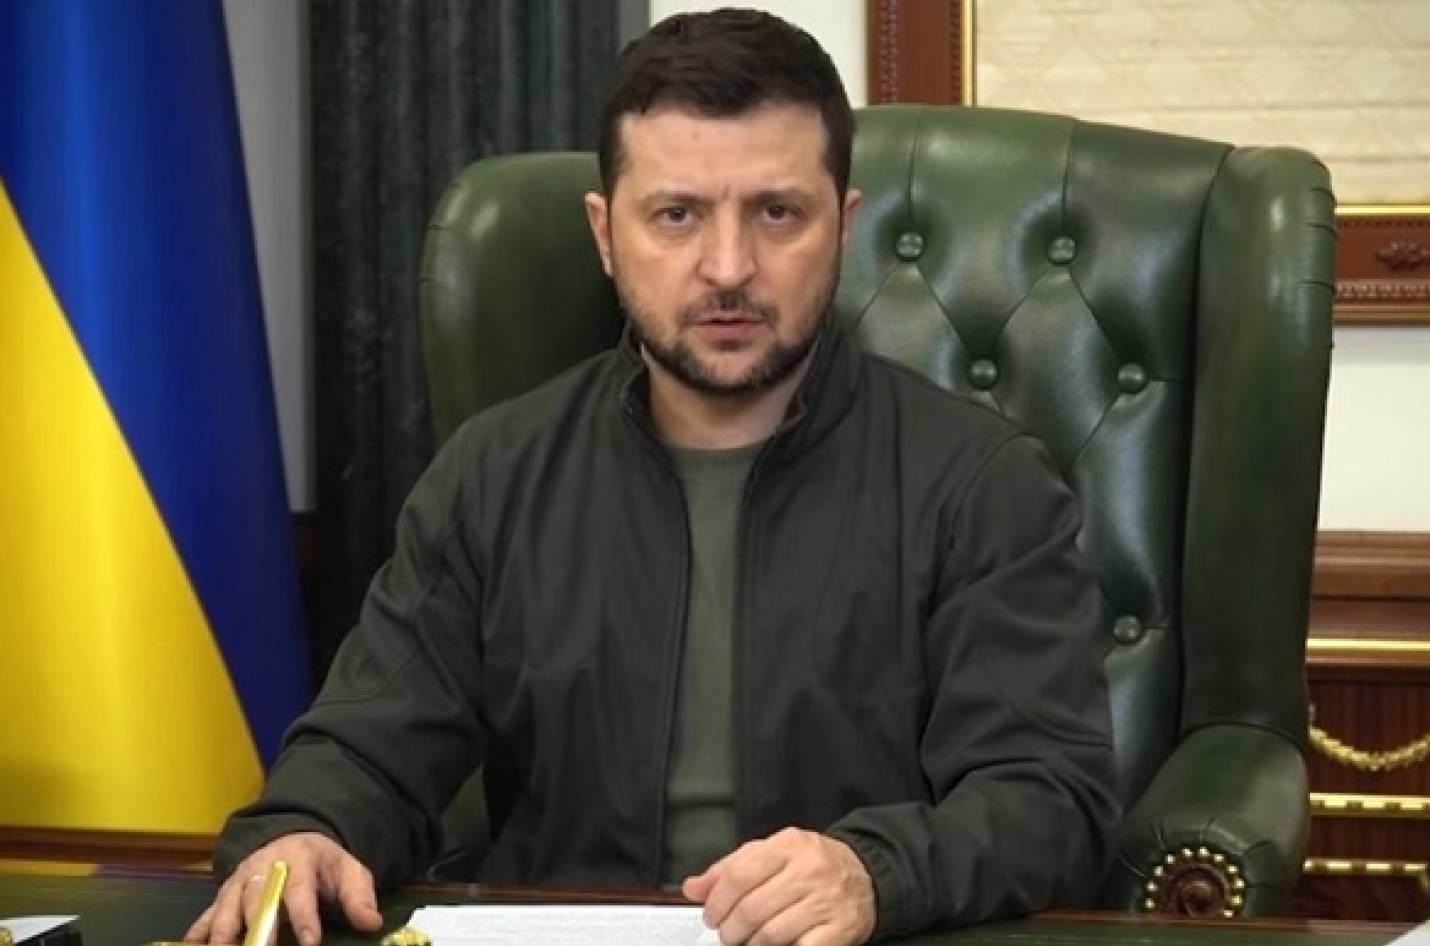 Зеленський назвав битву, яка визначить результат війни: "Україна боротиметься"